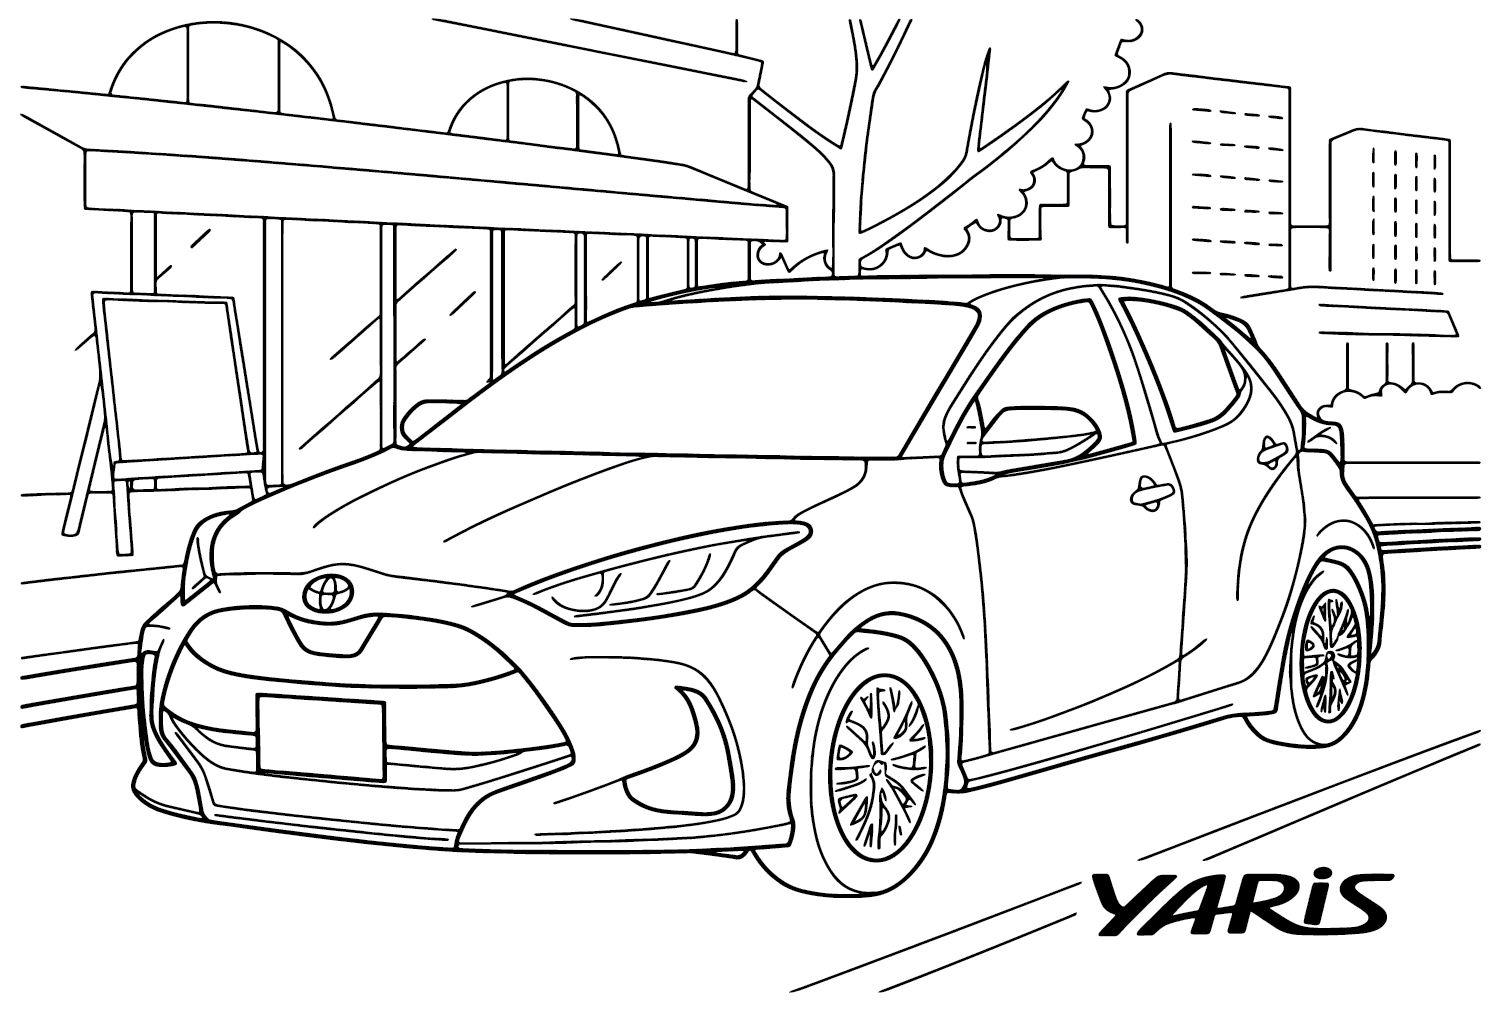 Toyota Yaris: изображения для раскрашивания от Toyota